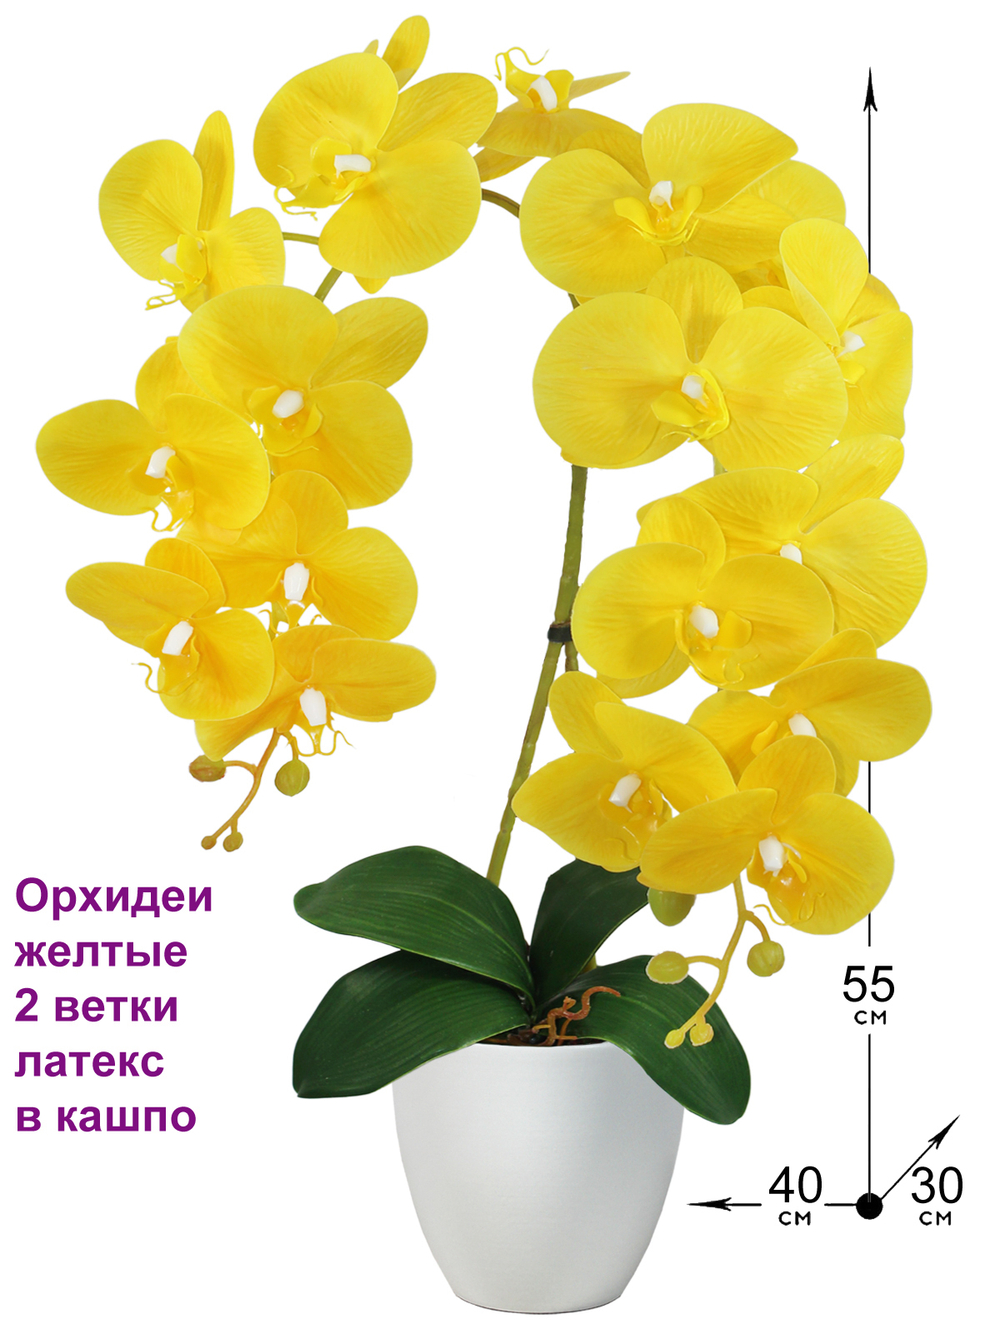 Искусственные Орхидеи желтые 2 ветки латекс 55см в кашпо